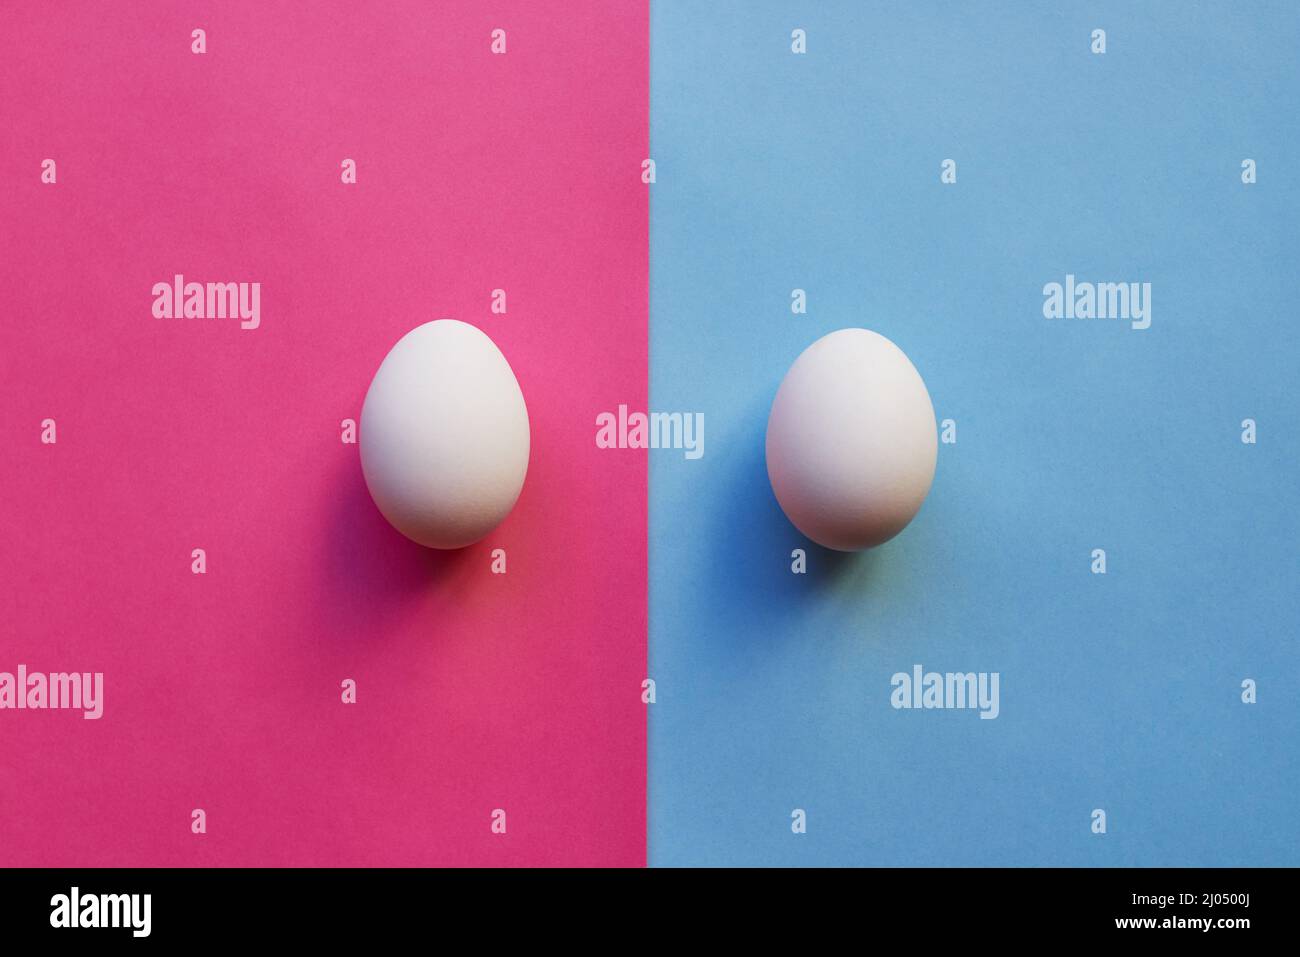 Wir haben einen Jungen und ein Mädchen. Studioaufnahme von zwei Eiern, die auf zwei verschiedenfarbigen Hintergründen nebeneinander platziert werden. Stockfoto